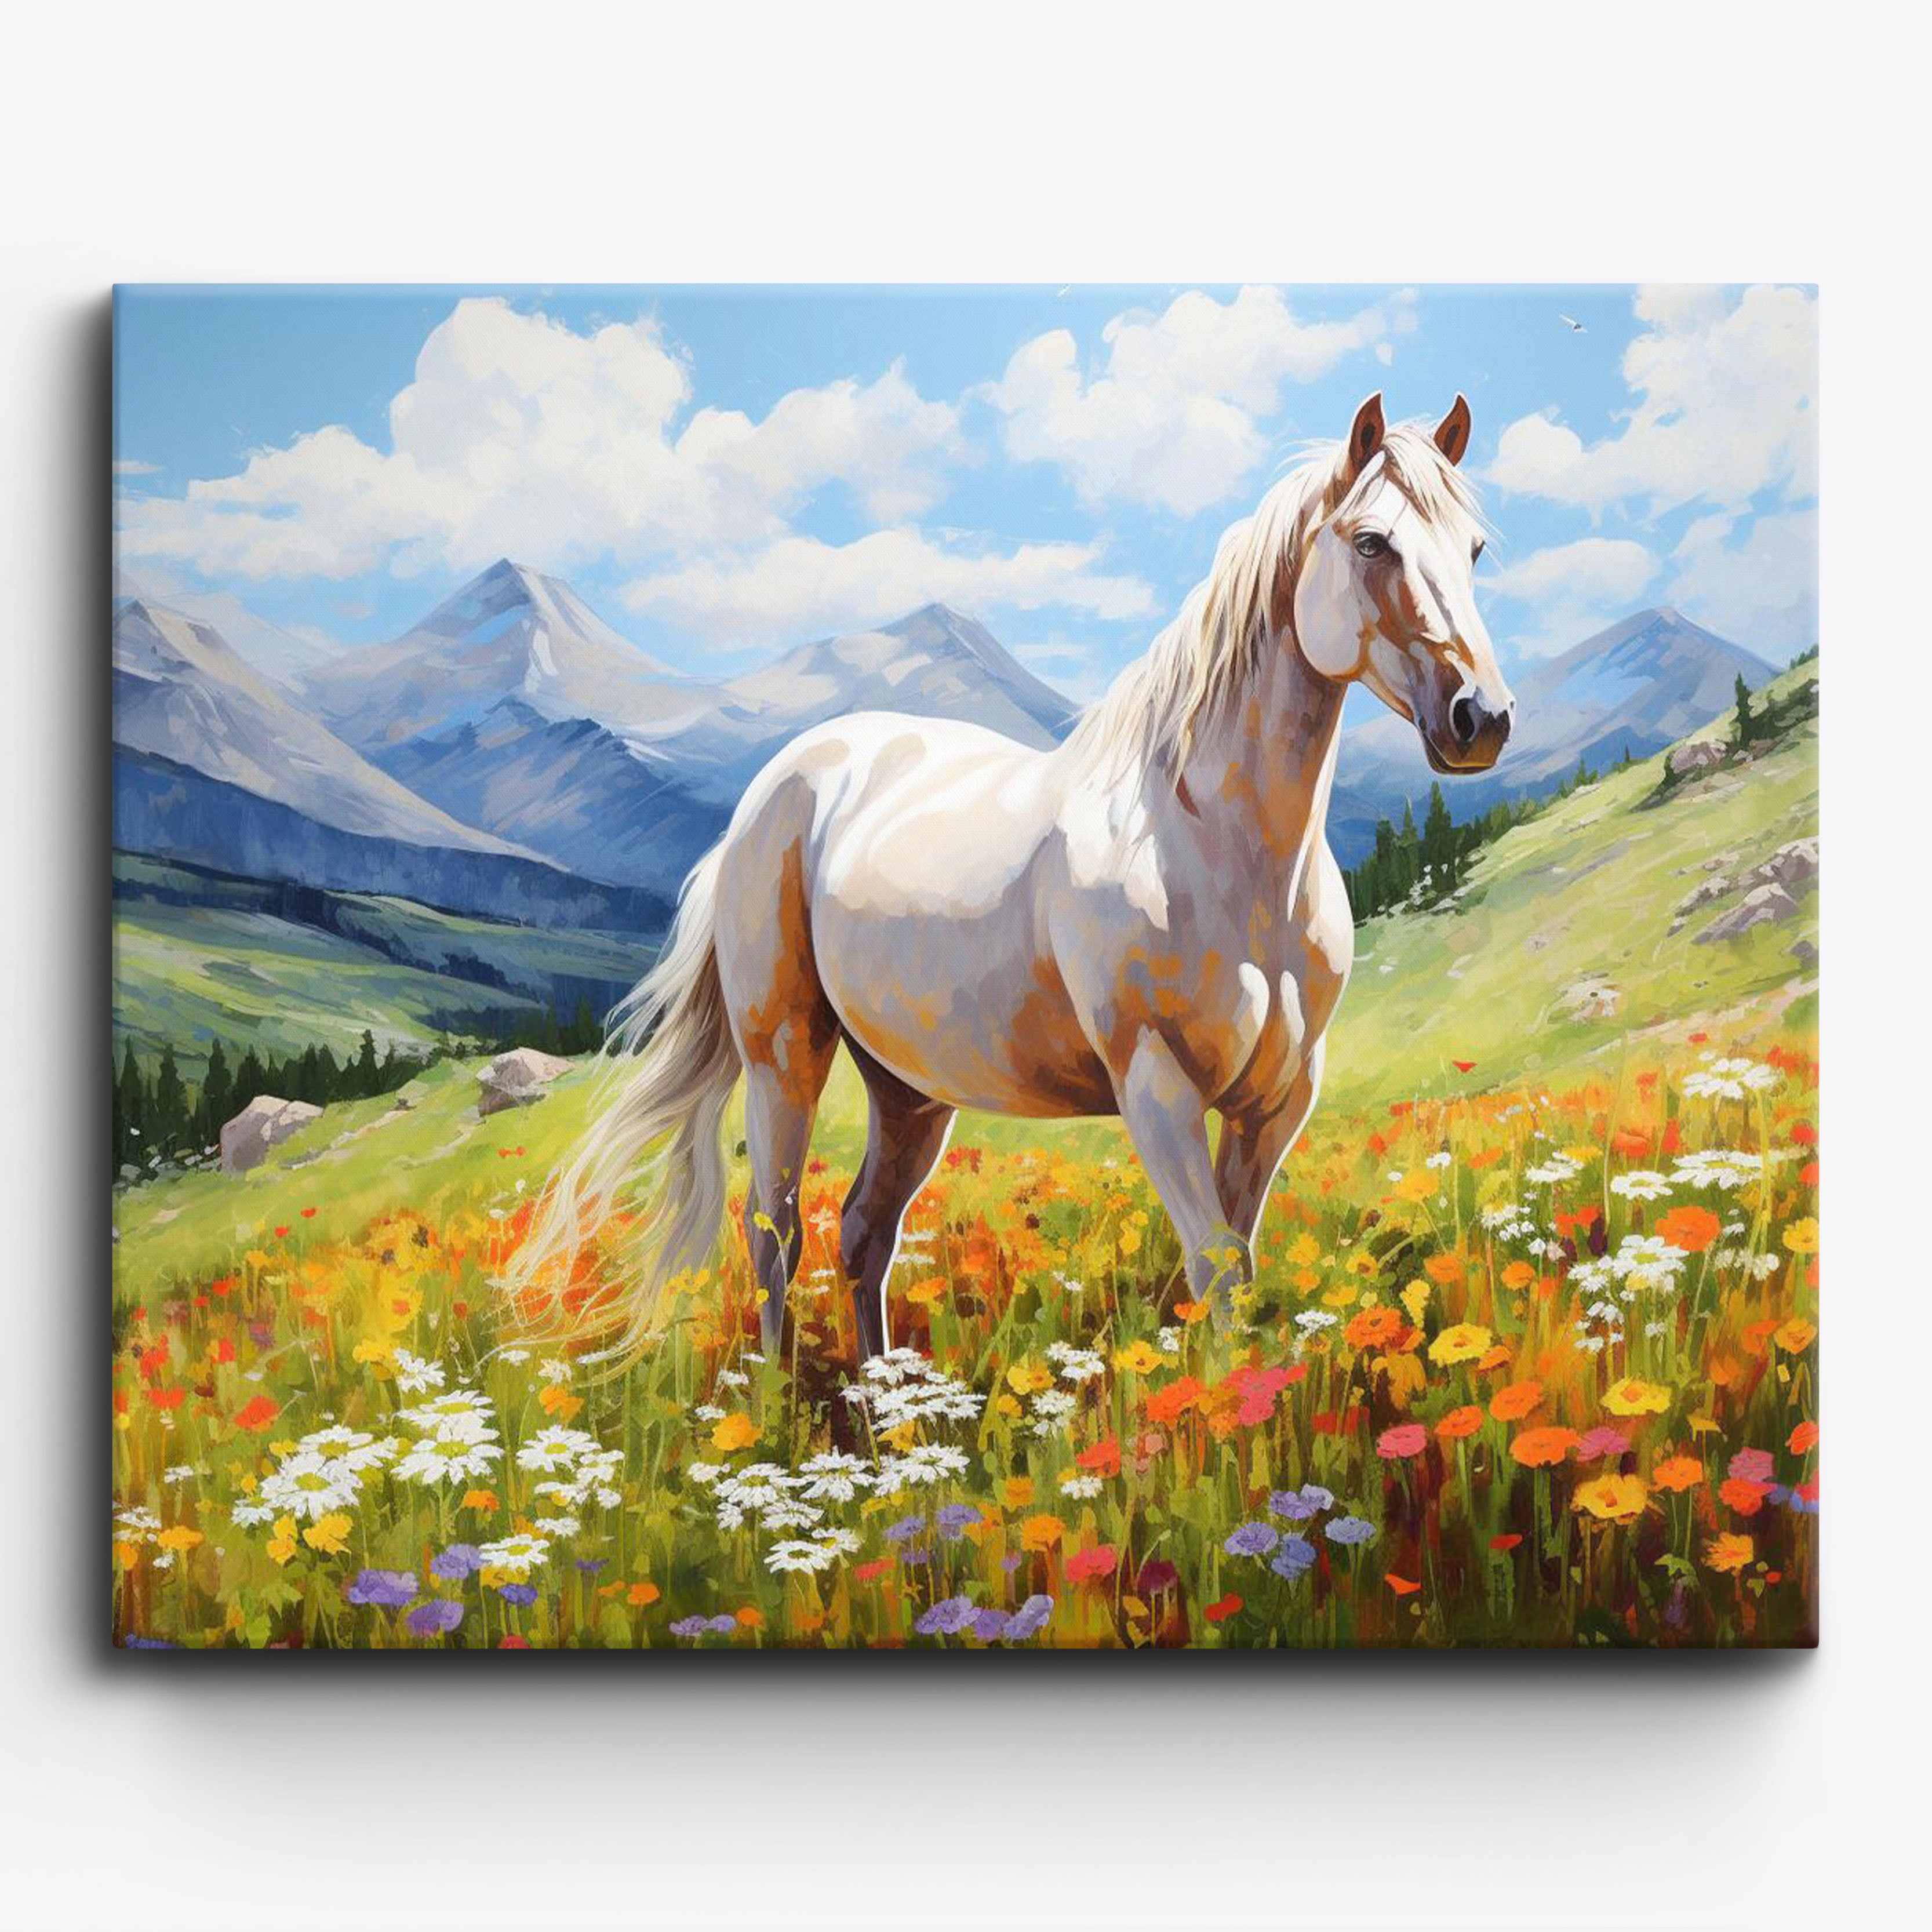 Meadows vita häst Grace